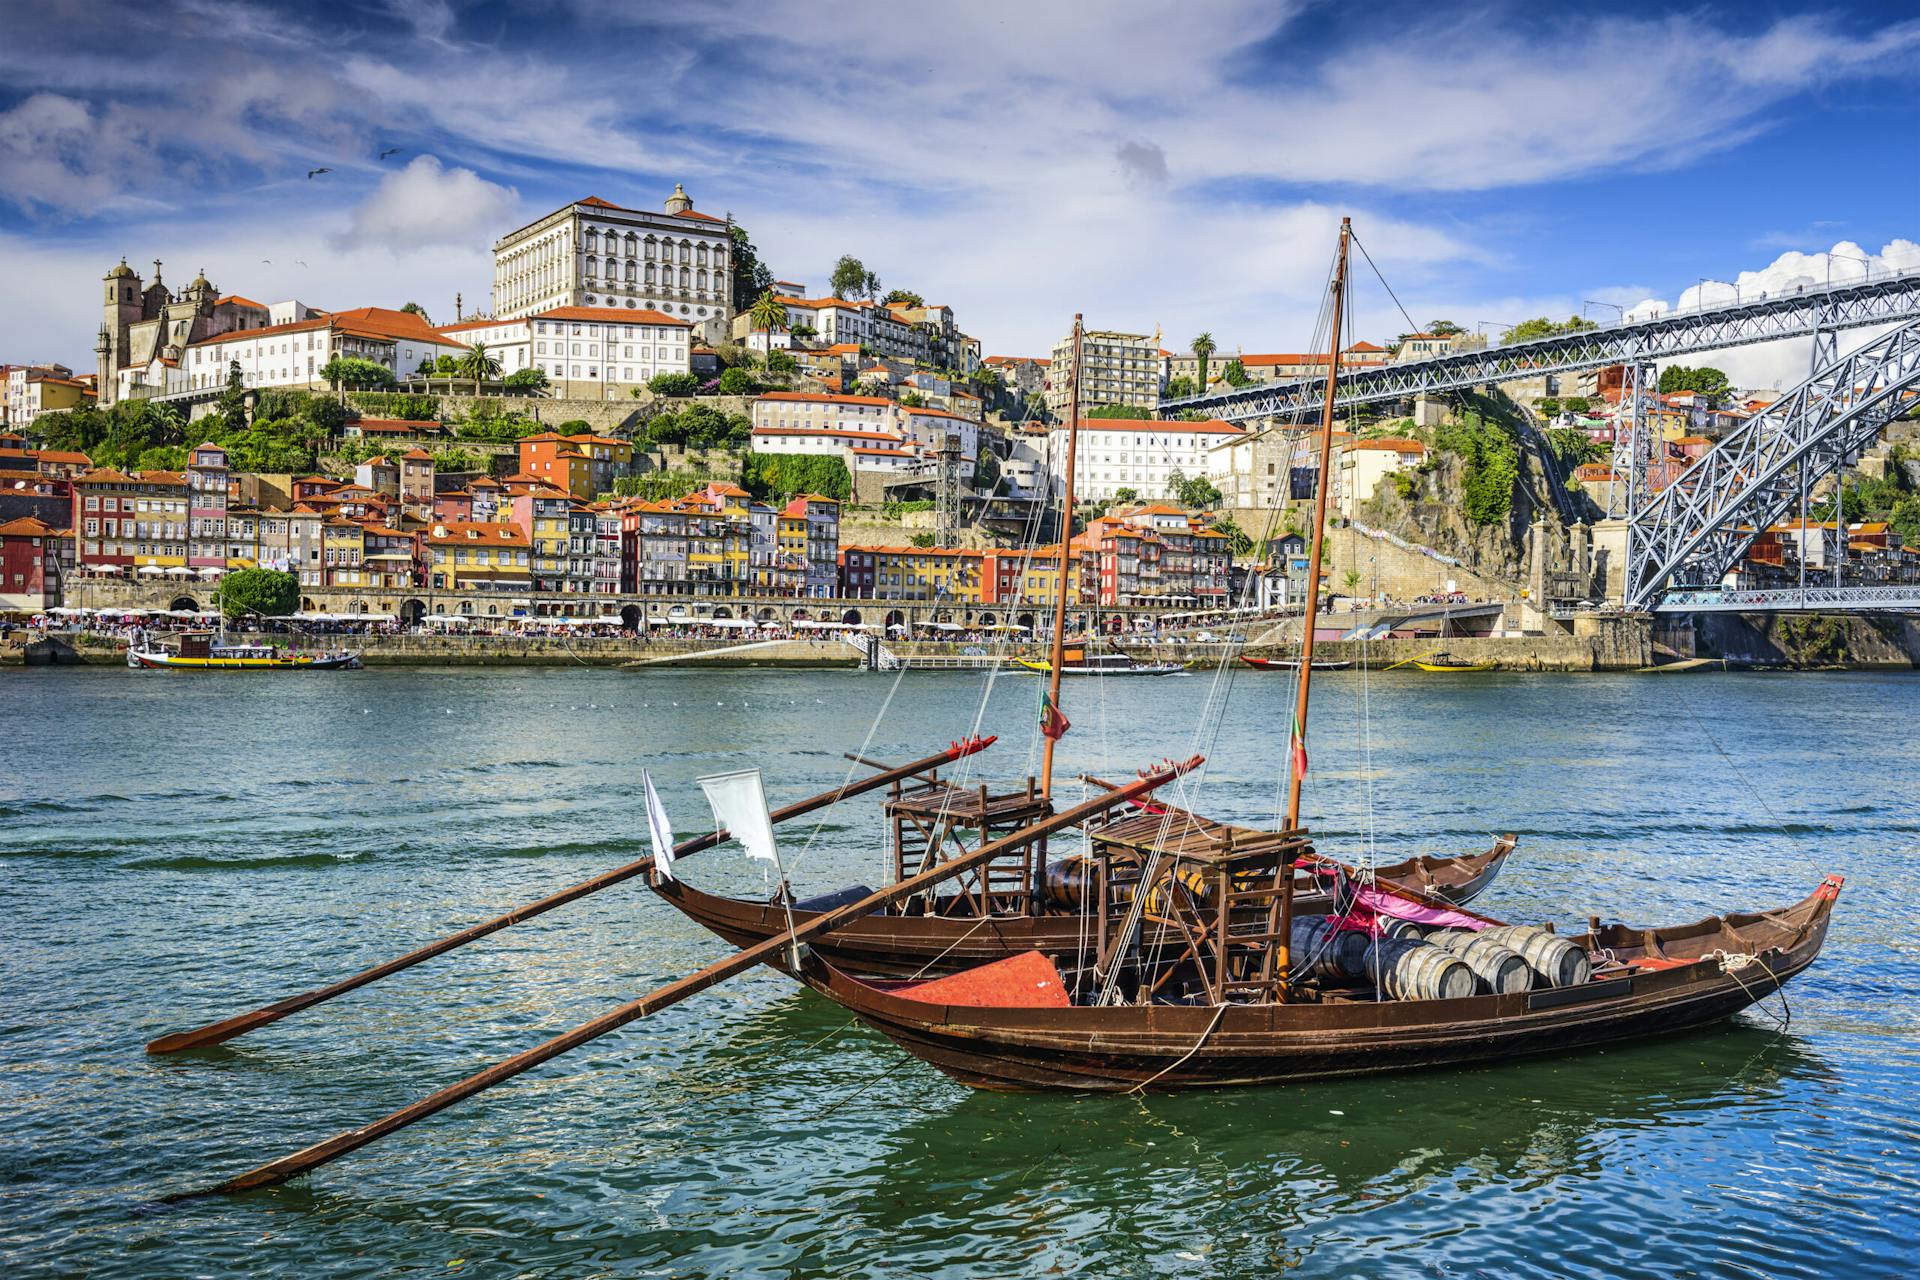 Näkymässä veneitä Porton joella. Näkymässä näkyy kaupunginrakennuksia